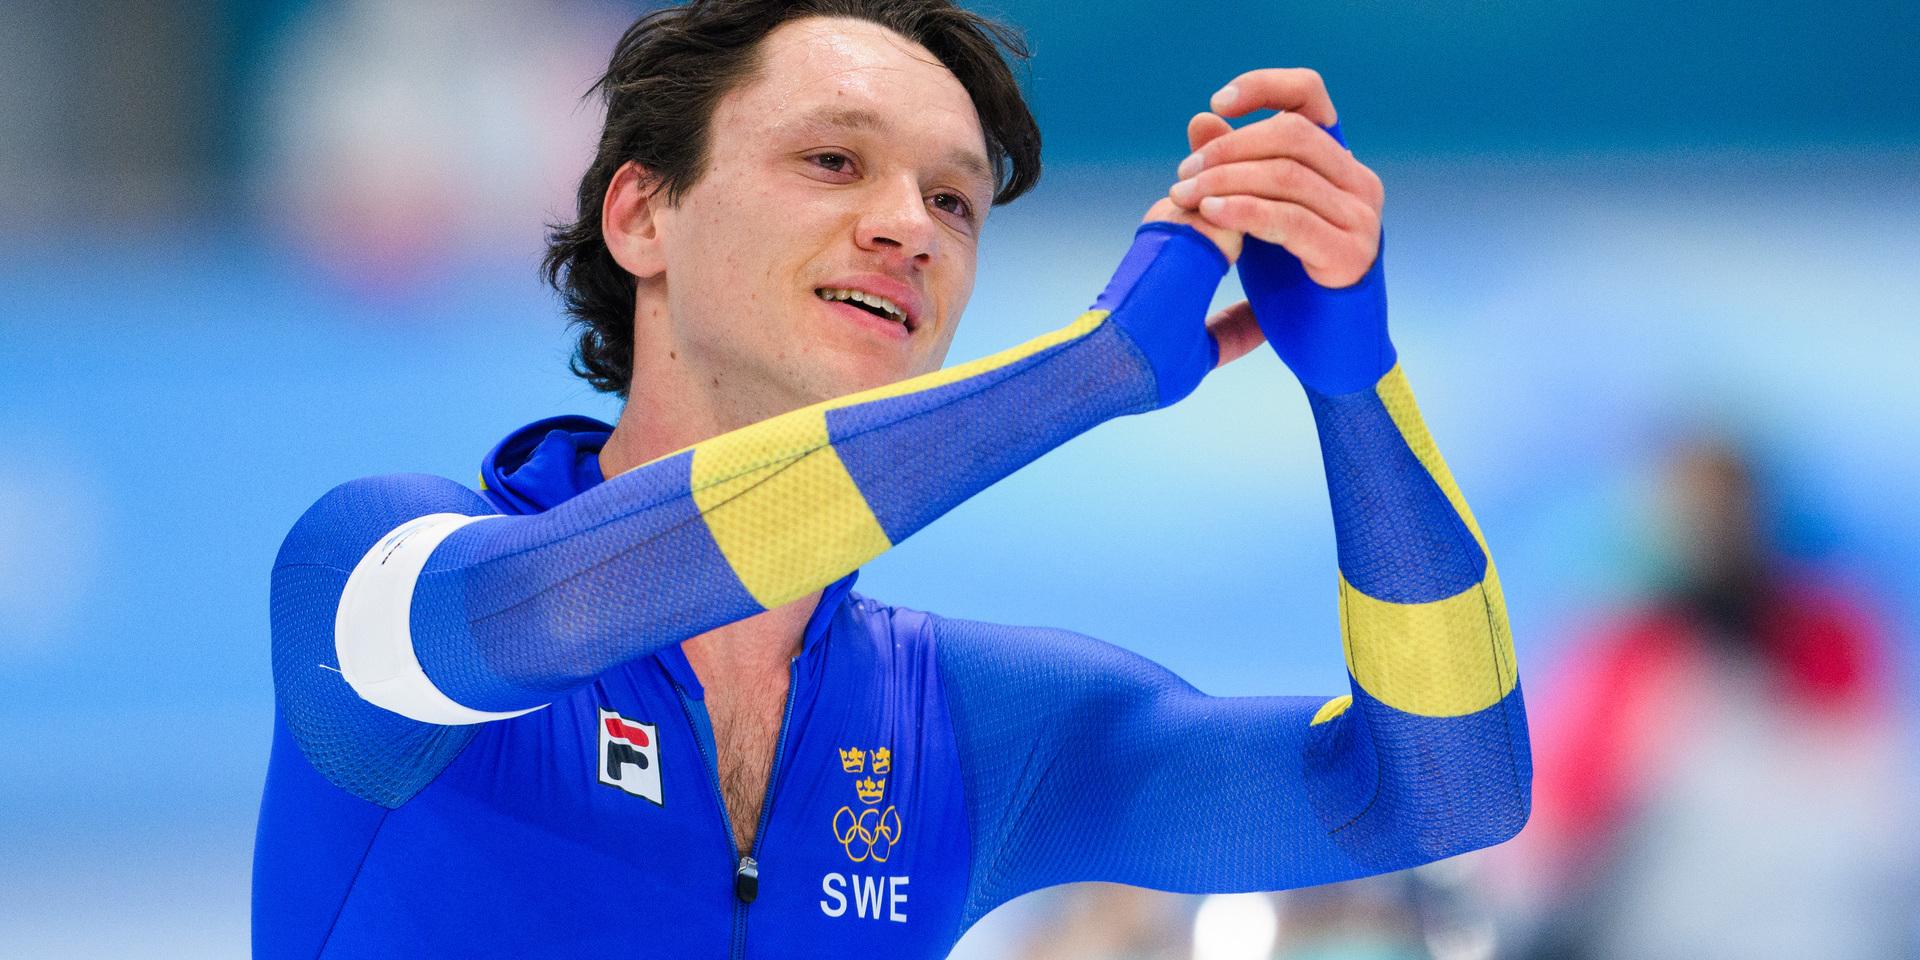 Nils van der Poel har ett riktigt succéår bakom sig med två VM-guld, två OS-guld, världsrekord och olympiska rekord.